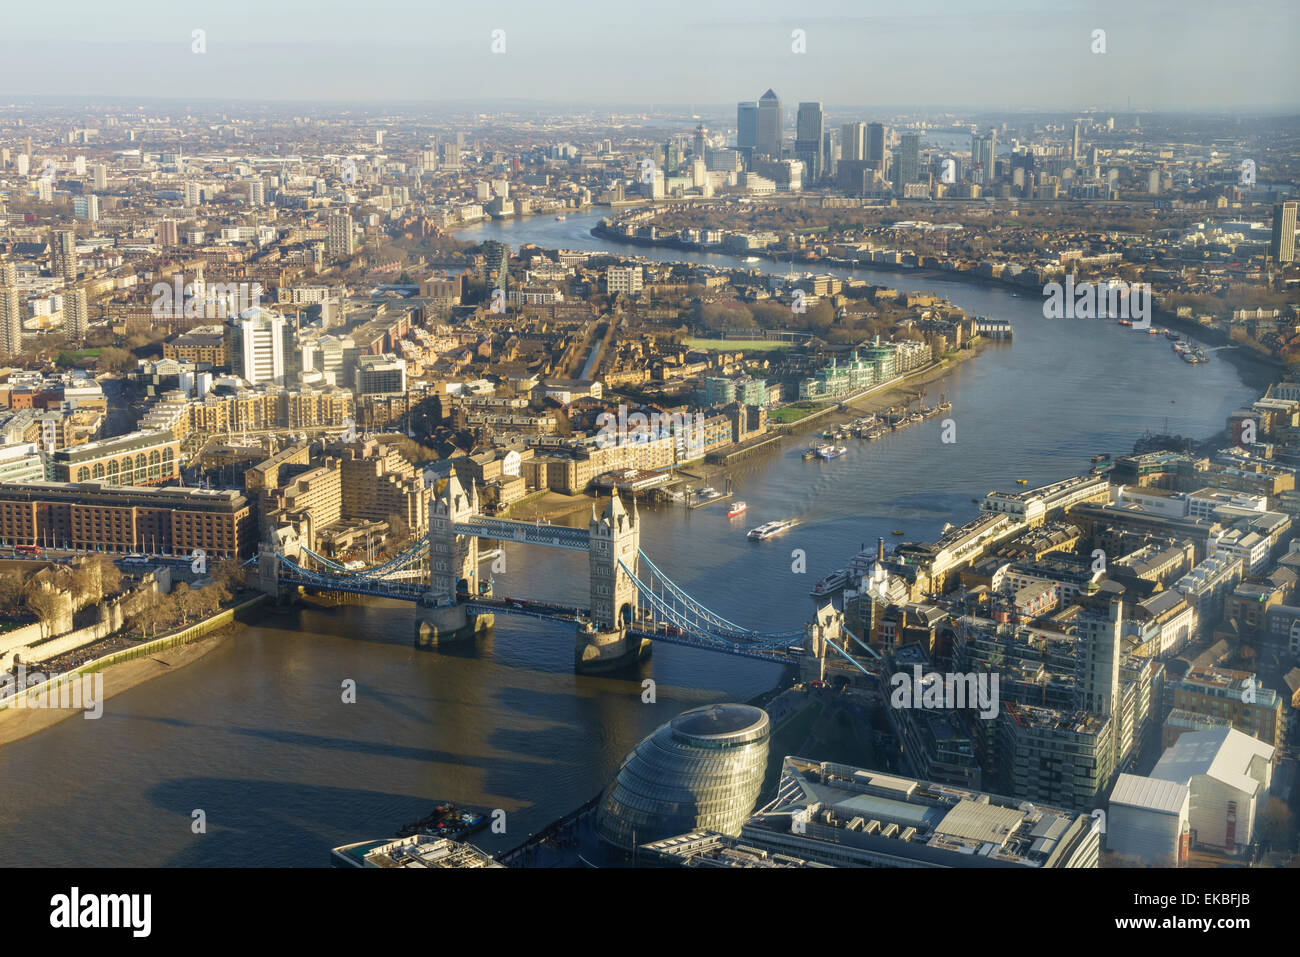 Portrait de la Tamise à l'Est, vers Canary Wharf avec le Tower Bridge au premier plan, London, England, UK Banque D'Images